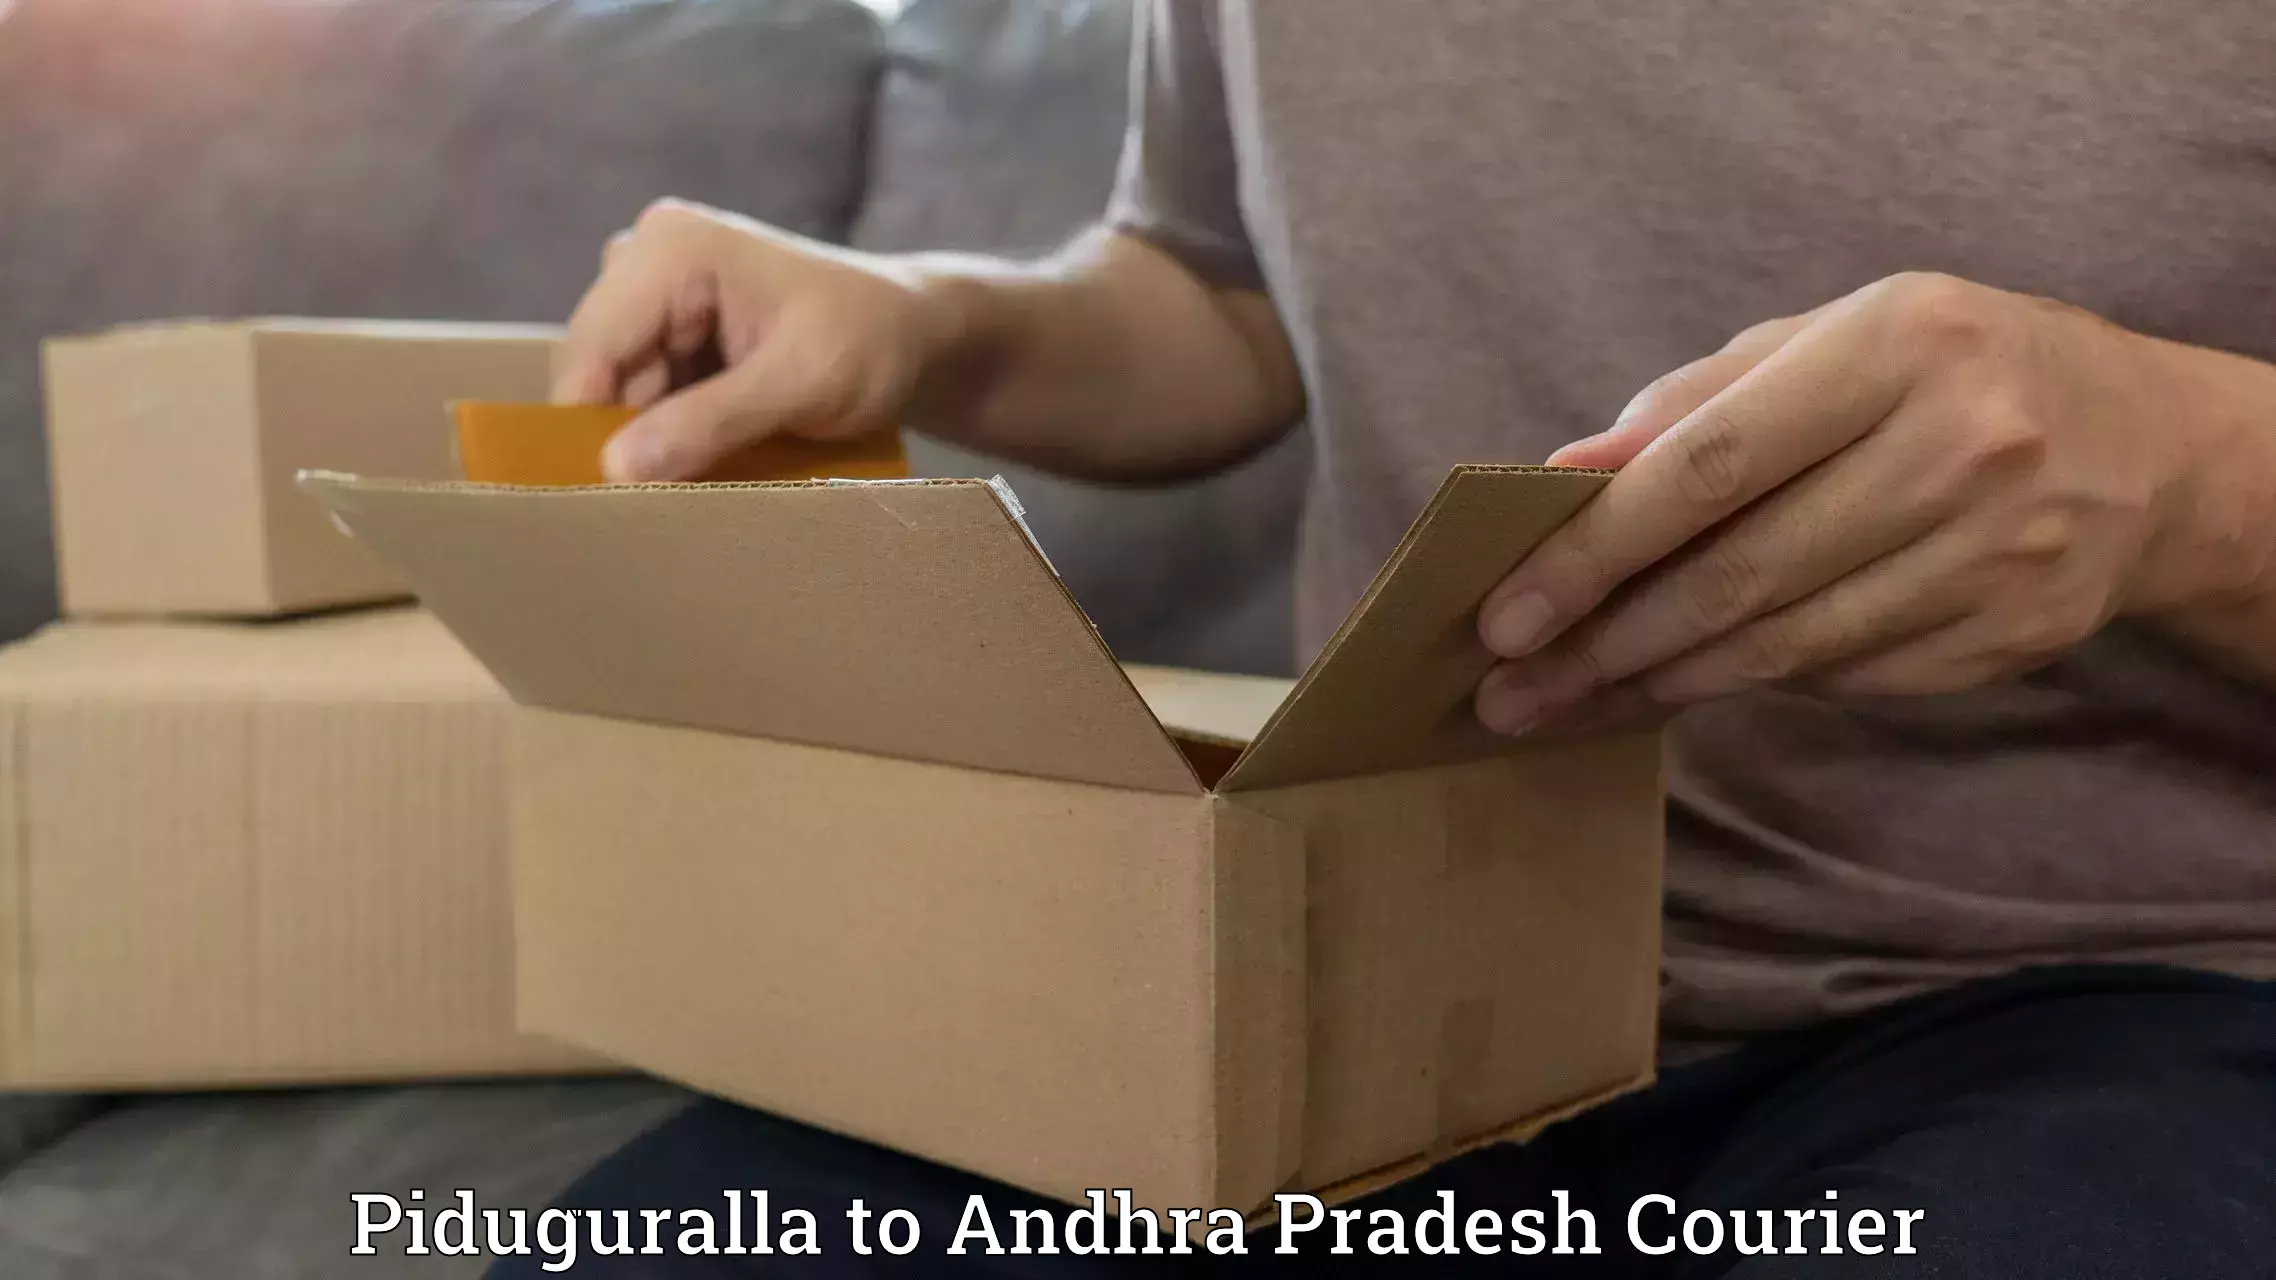 Efficient logistics management Piduguralla to Andhra Pradesh